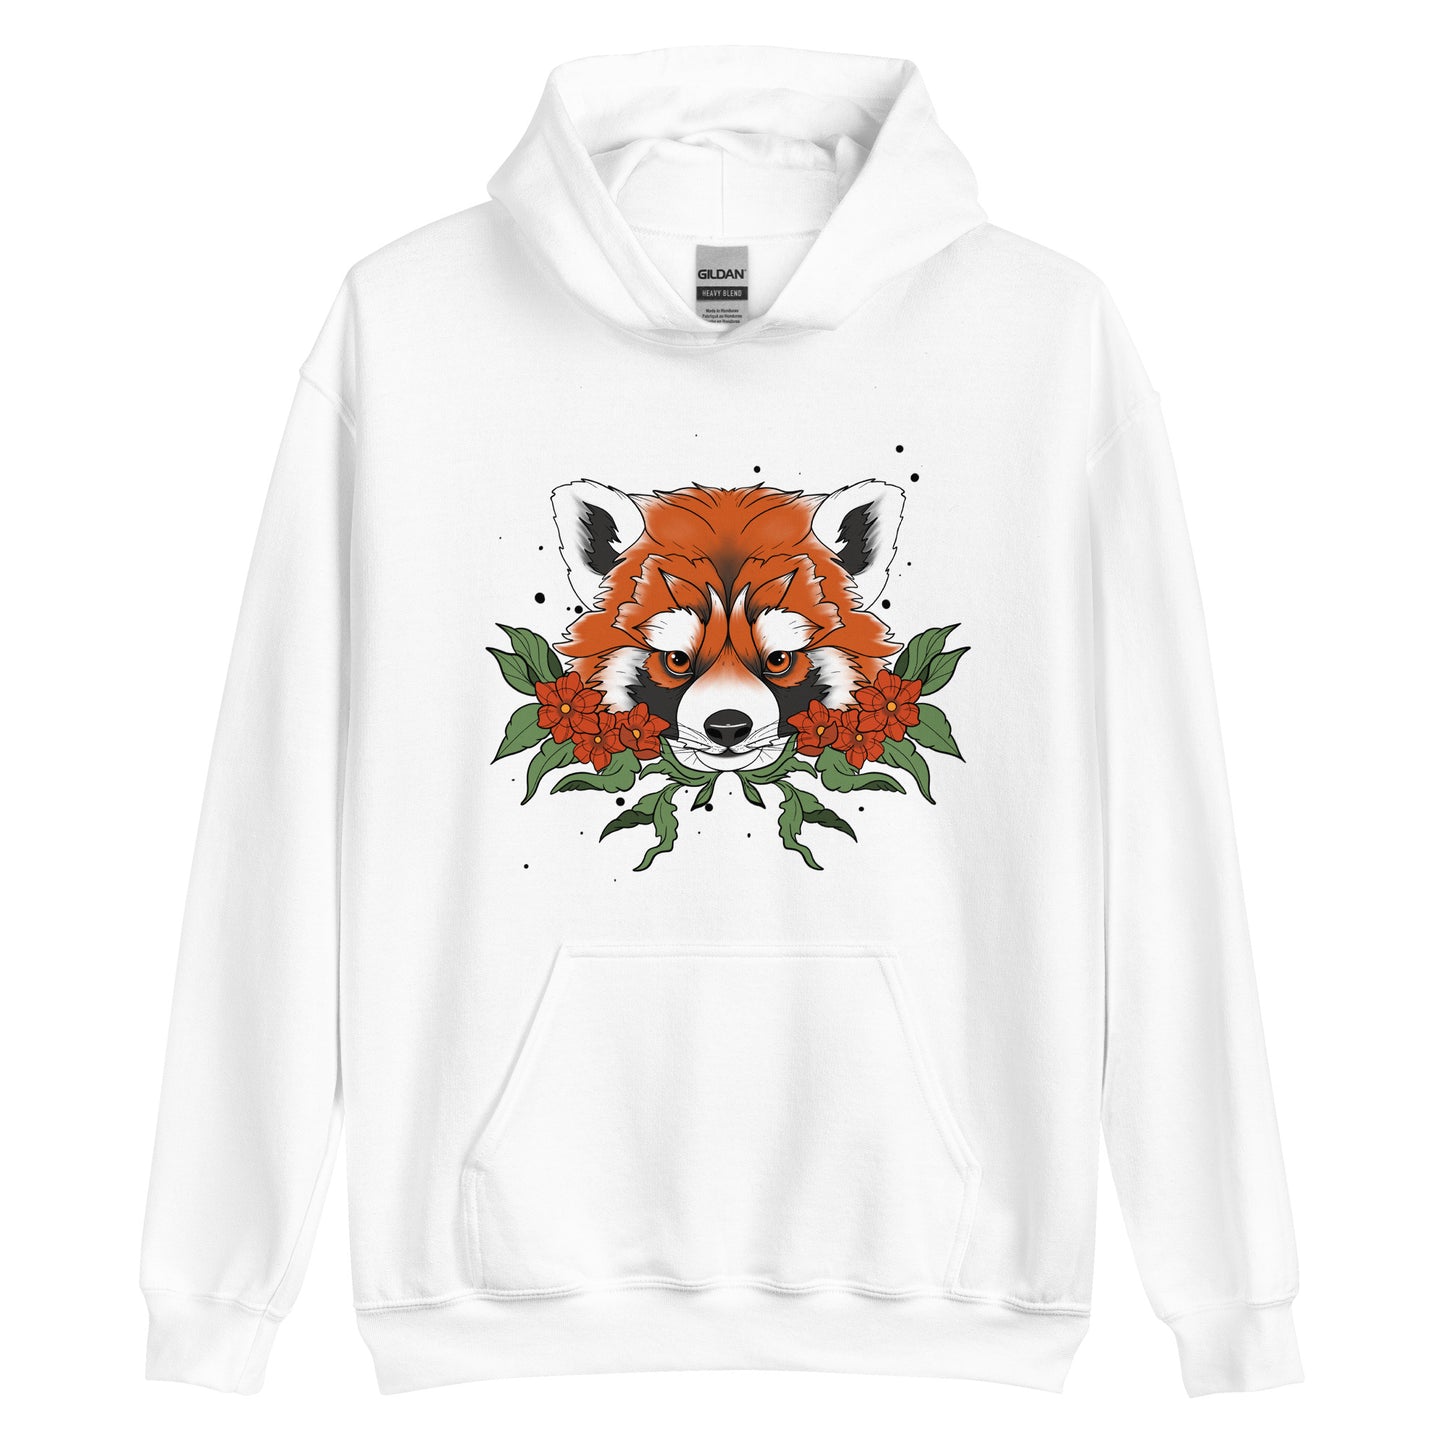 Unisex Neo red panda Hoodie